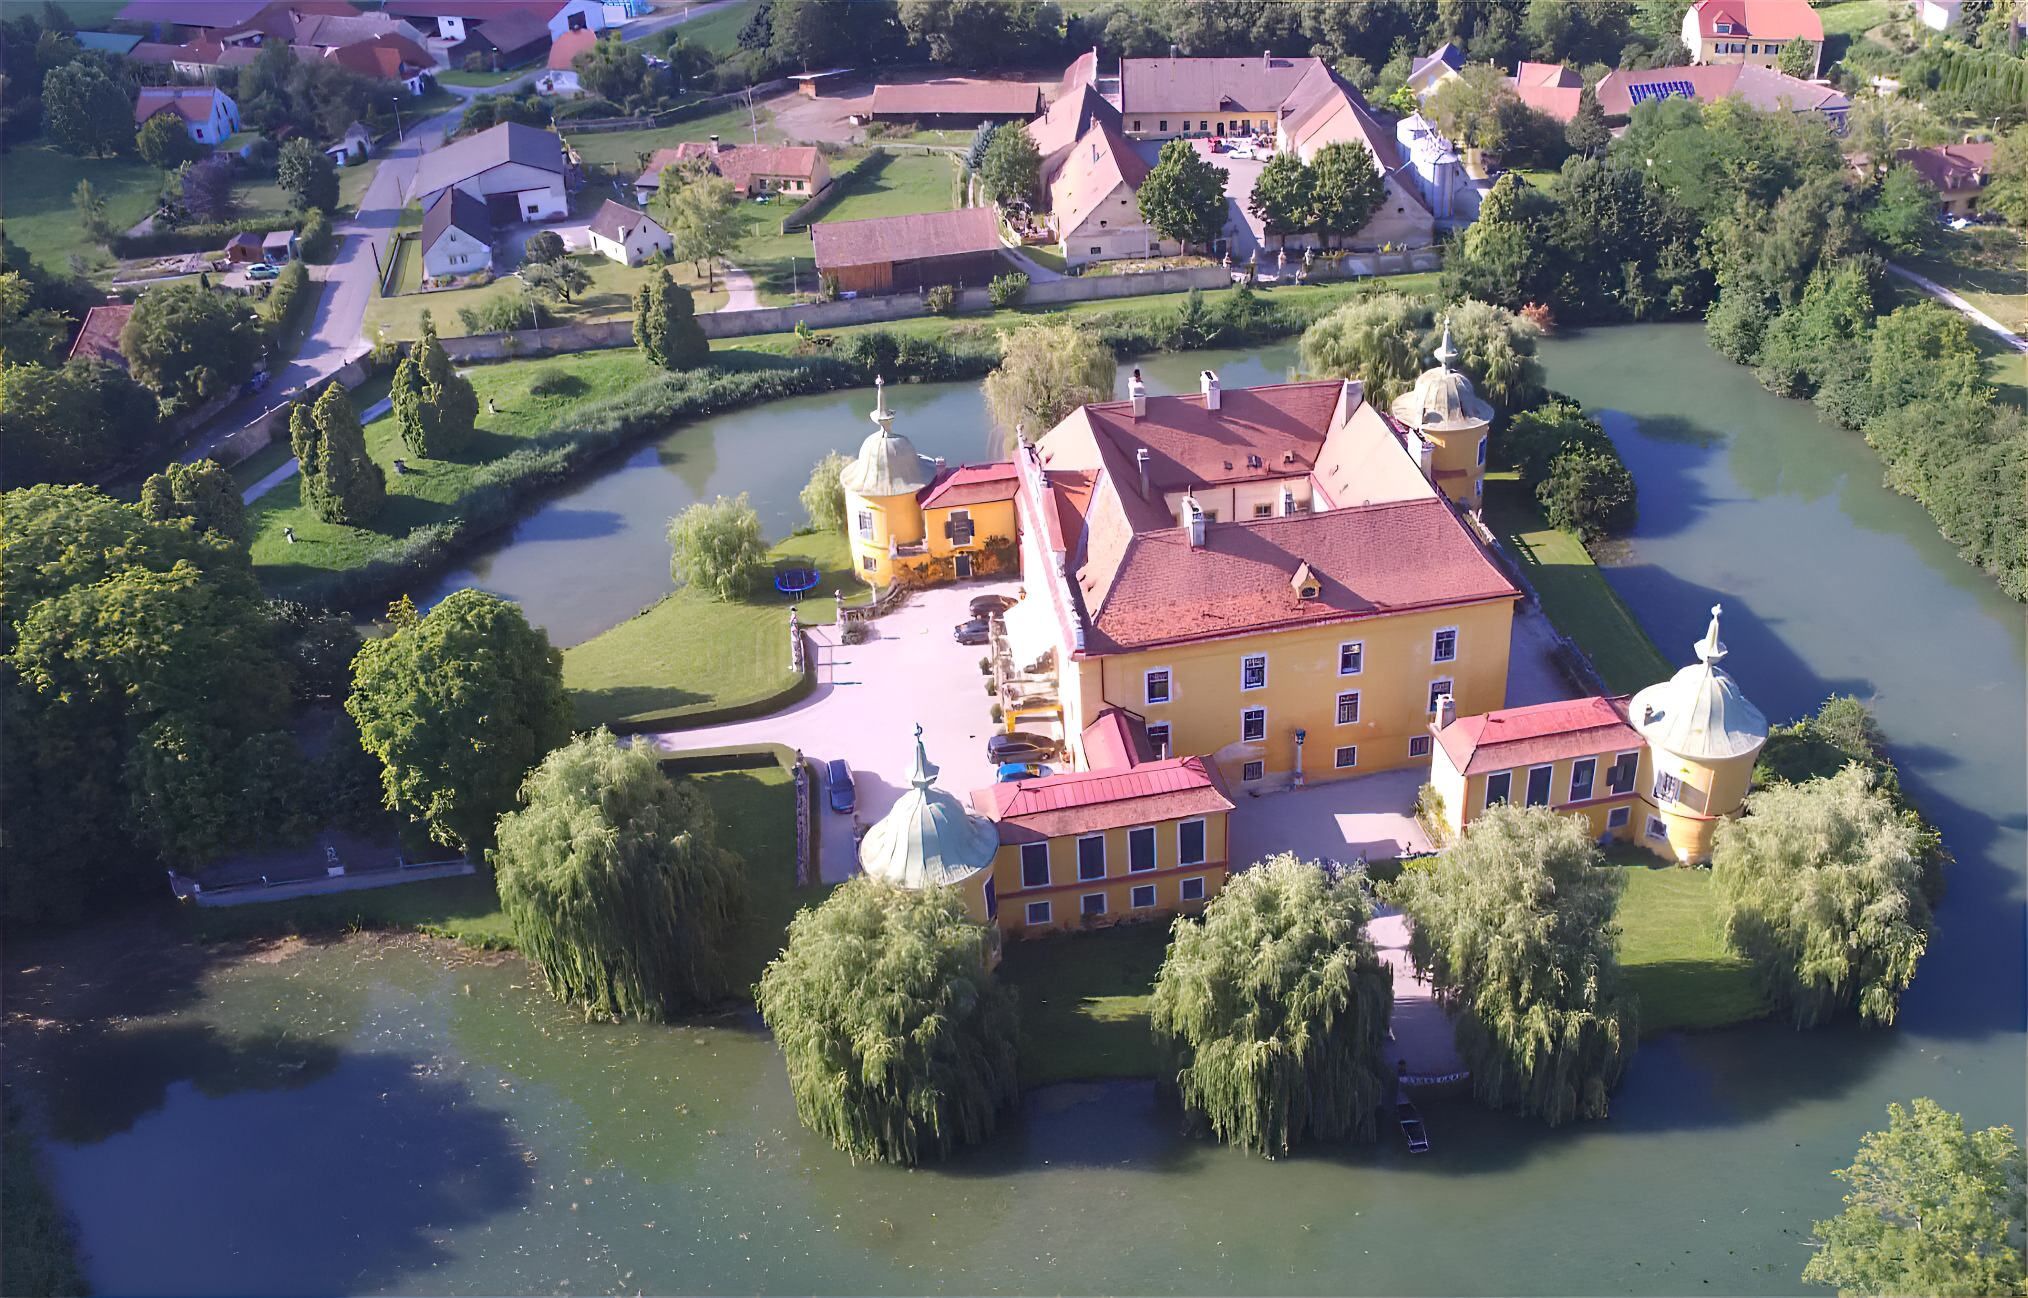 wasserburg castle drone shot